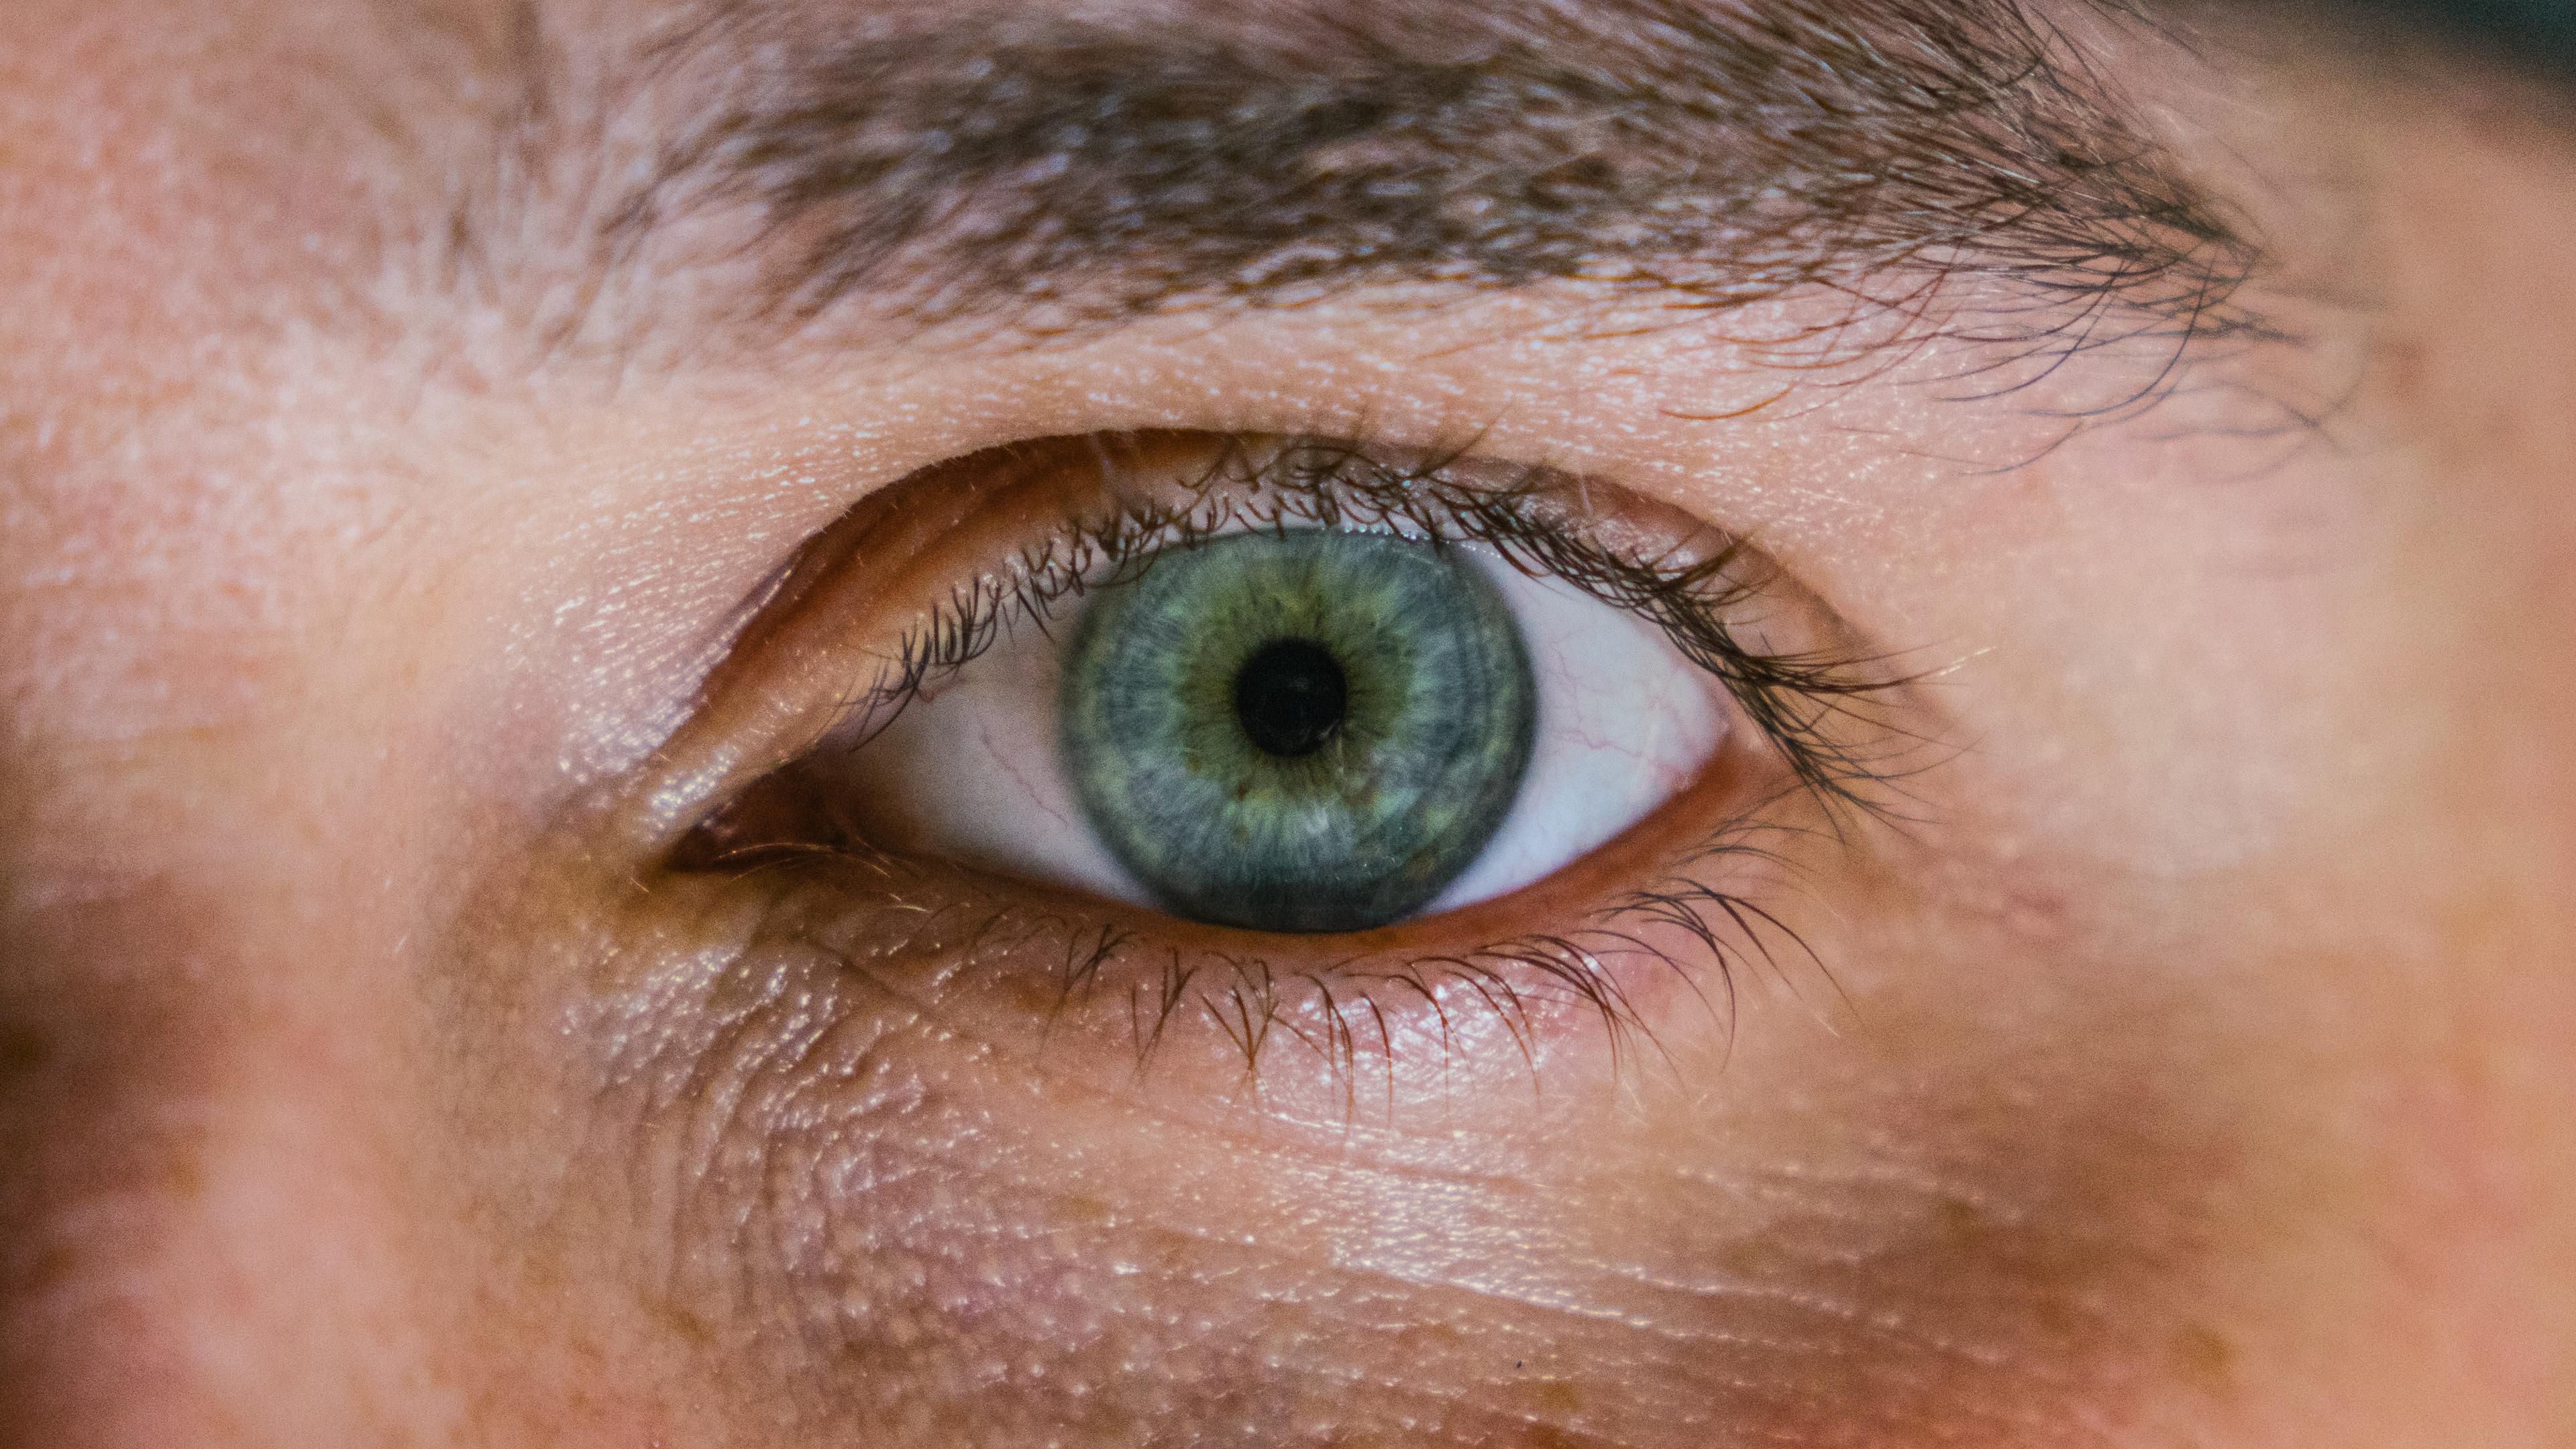 Jakie stosować zioła dla zdrowia oczu? Zioła na dobry wzrok. Zioła na schorzenia oczu. Najlepsze zioła na oczy – zadbaj o wzrok naturalnie! 